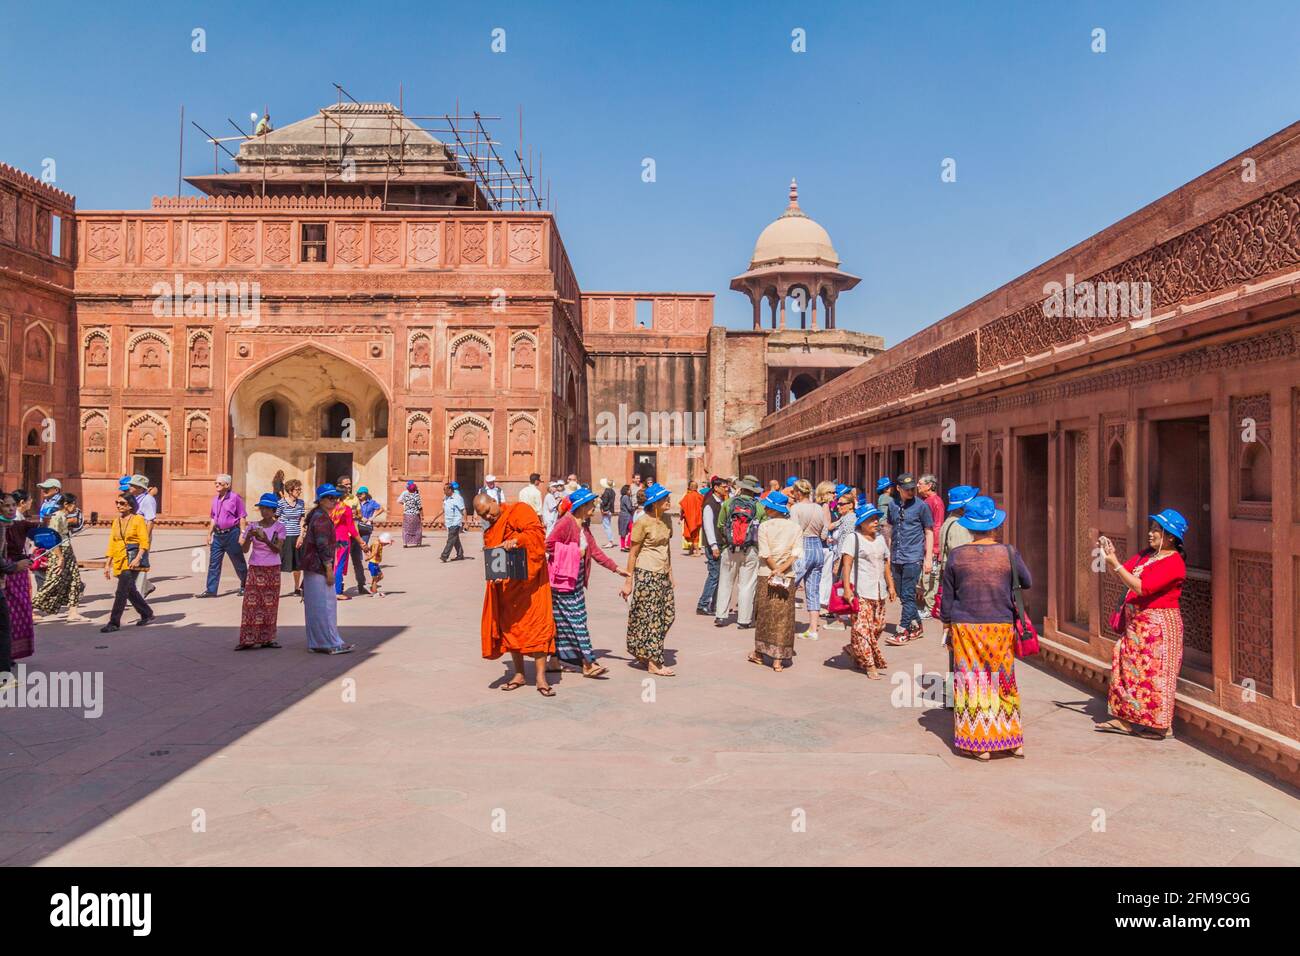 AGRA, INDIEN - 20. FEBRUAR 2017: Einheimische Touristen besuchen den Shah Jahani Mahal Palast in Agra Fort, Bundesstaat Uttar Pradesh, Indien Stockfoto